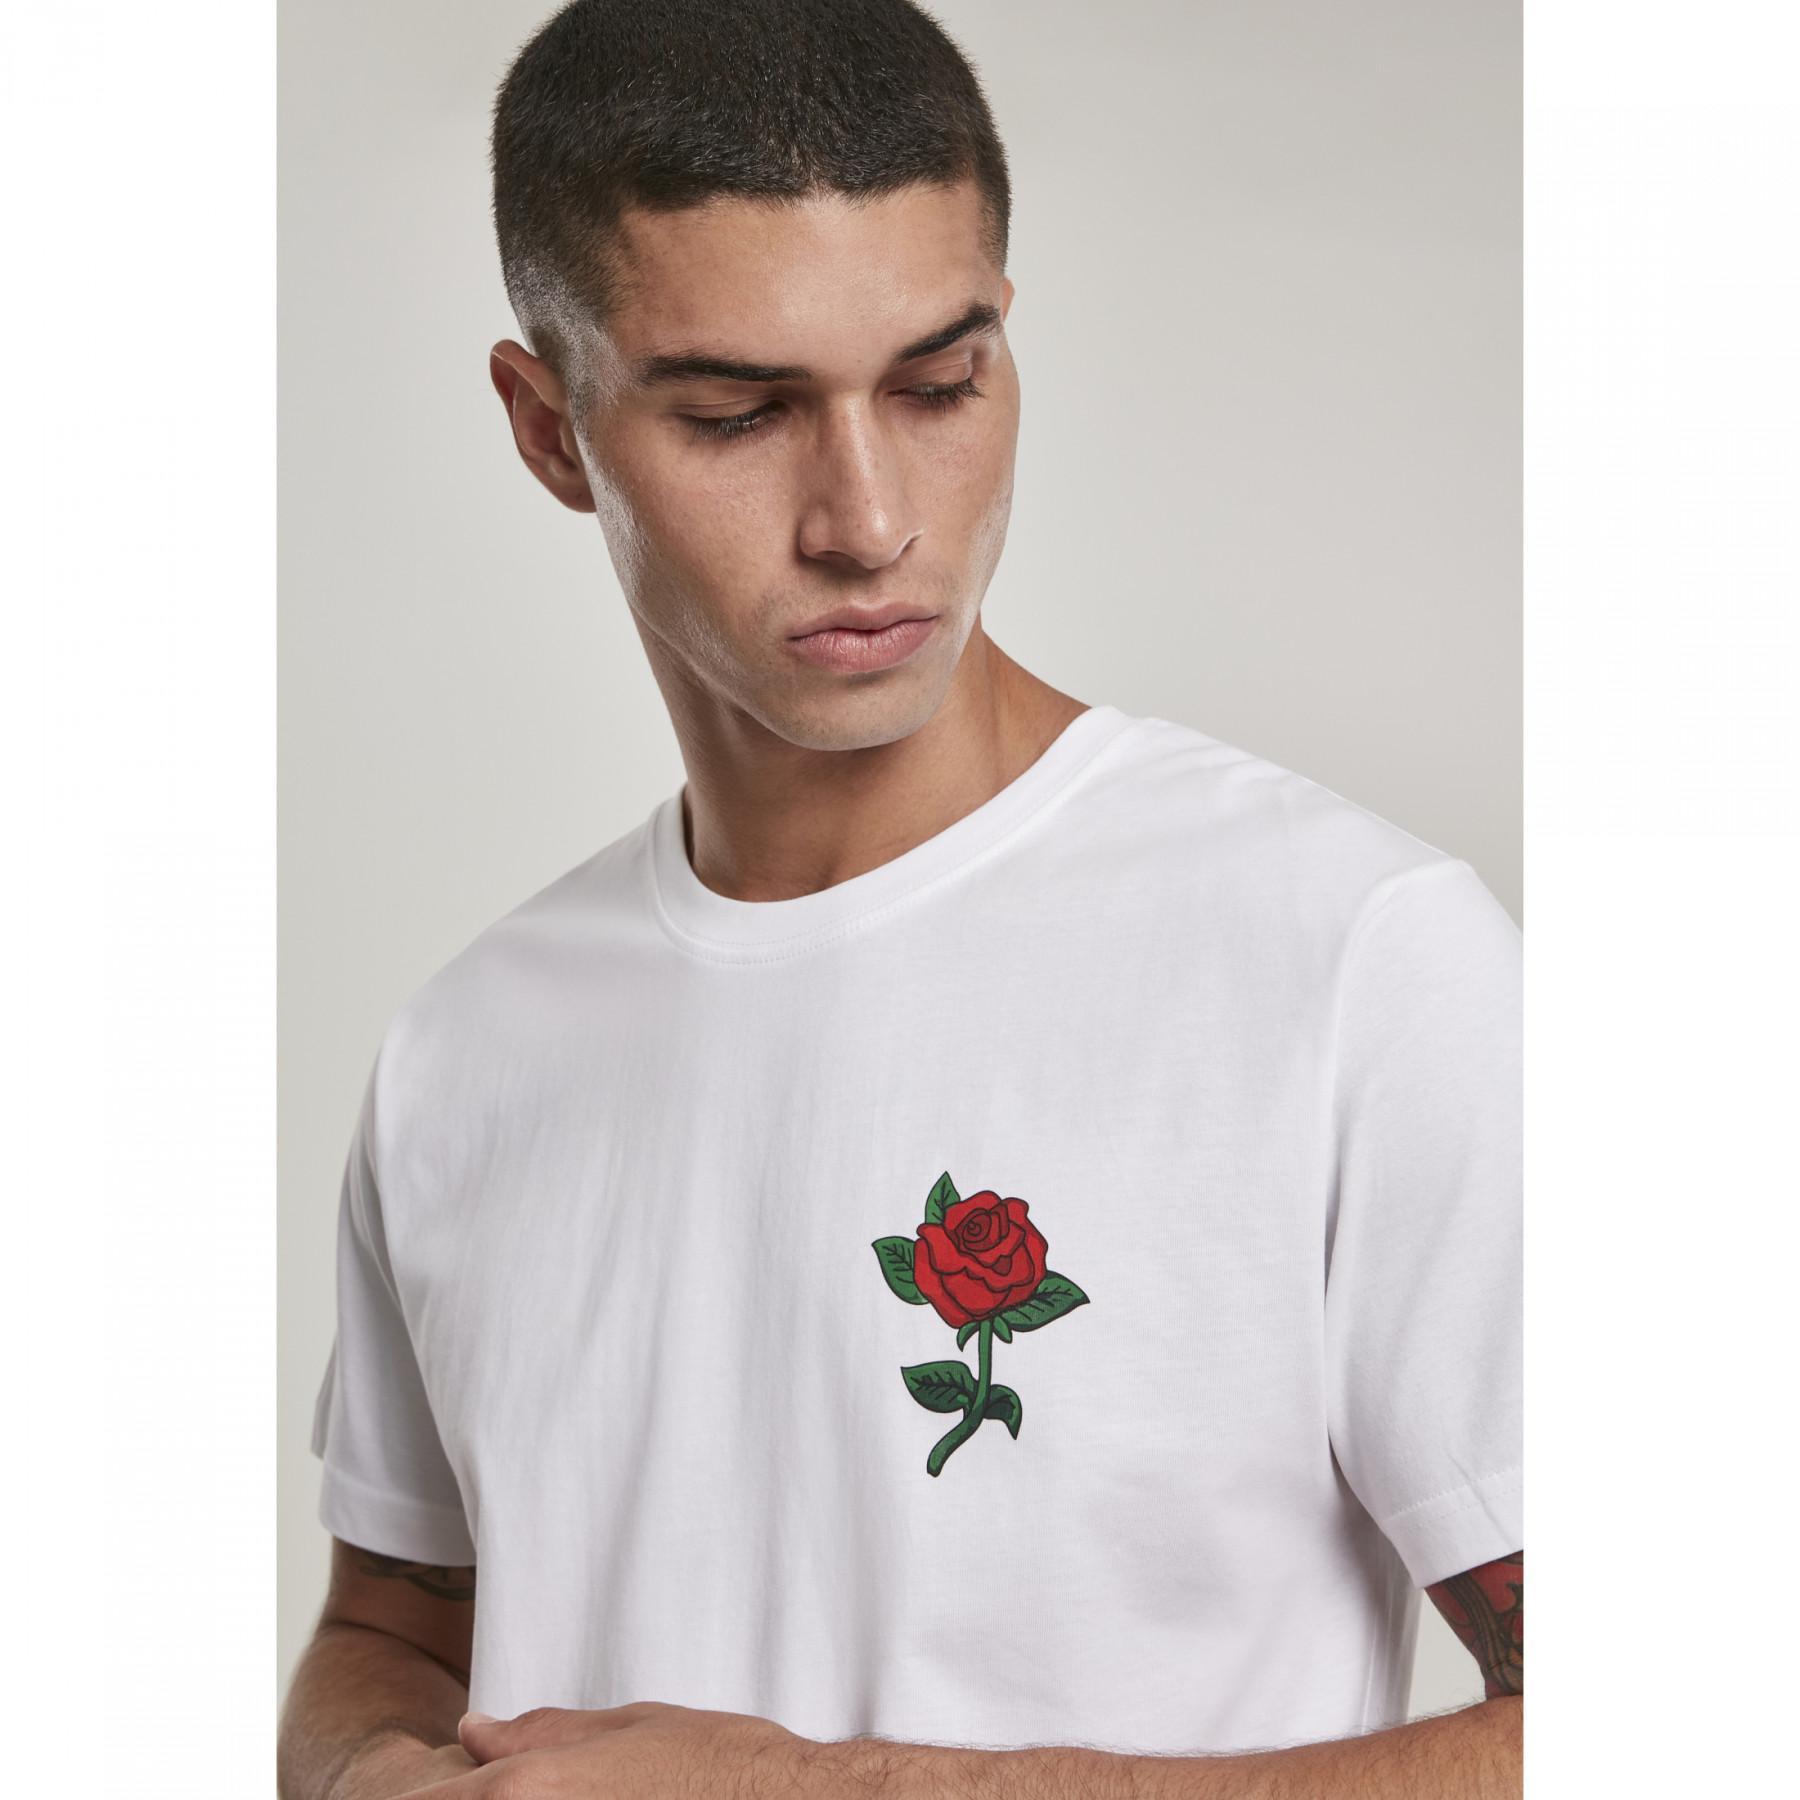 T-shirt Mister Tee rose GT